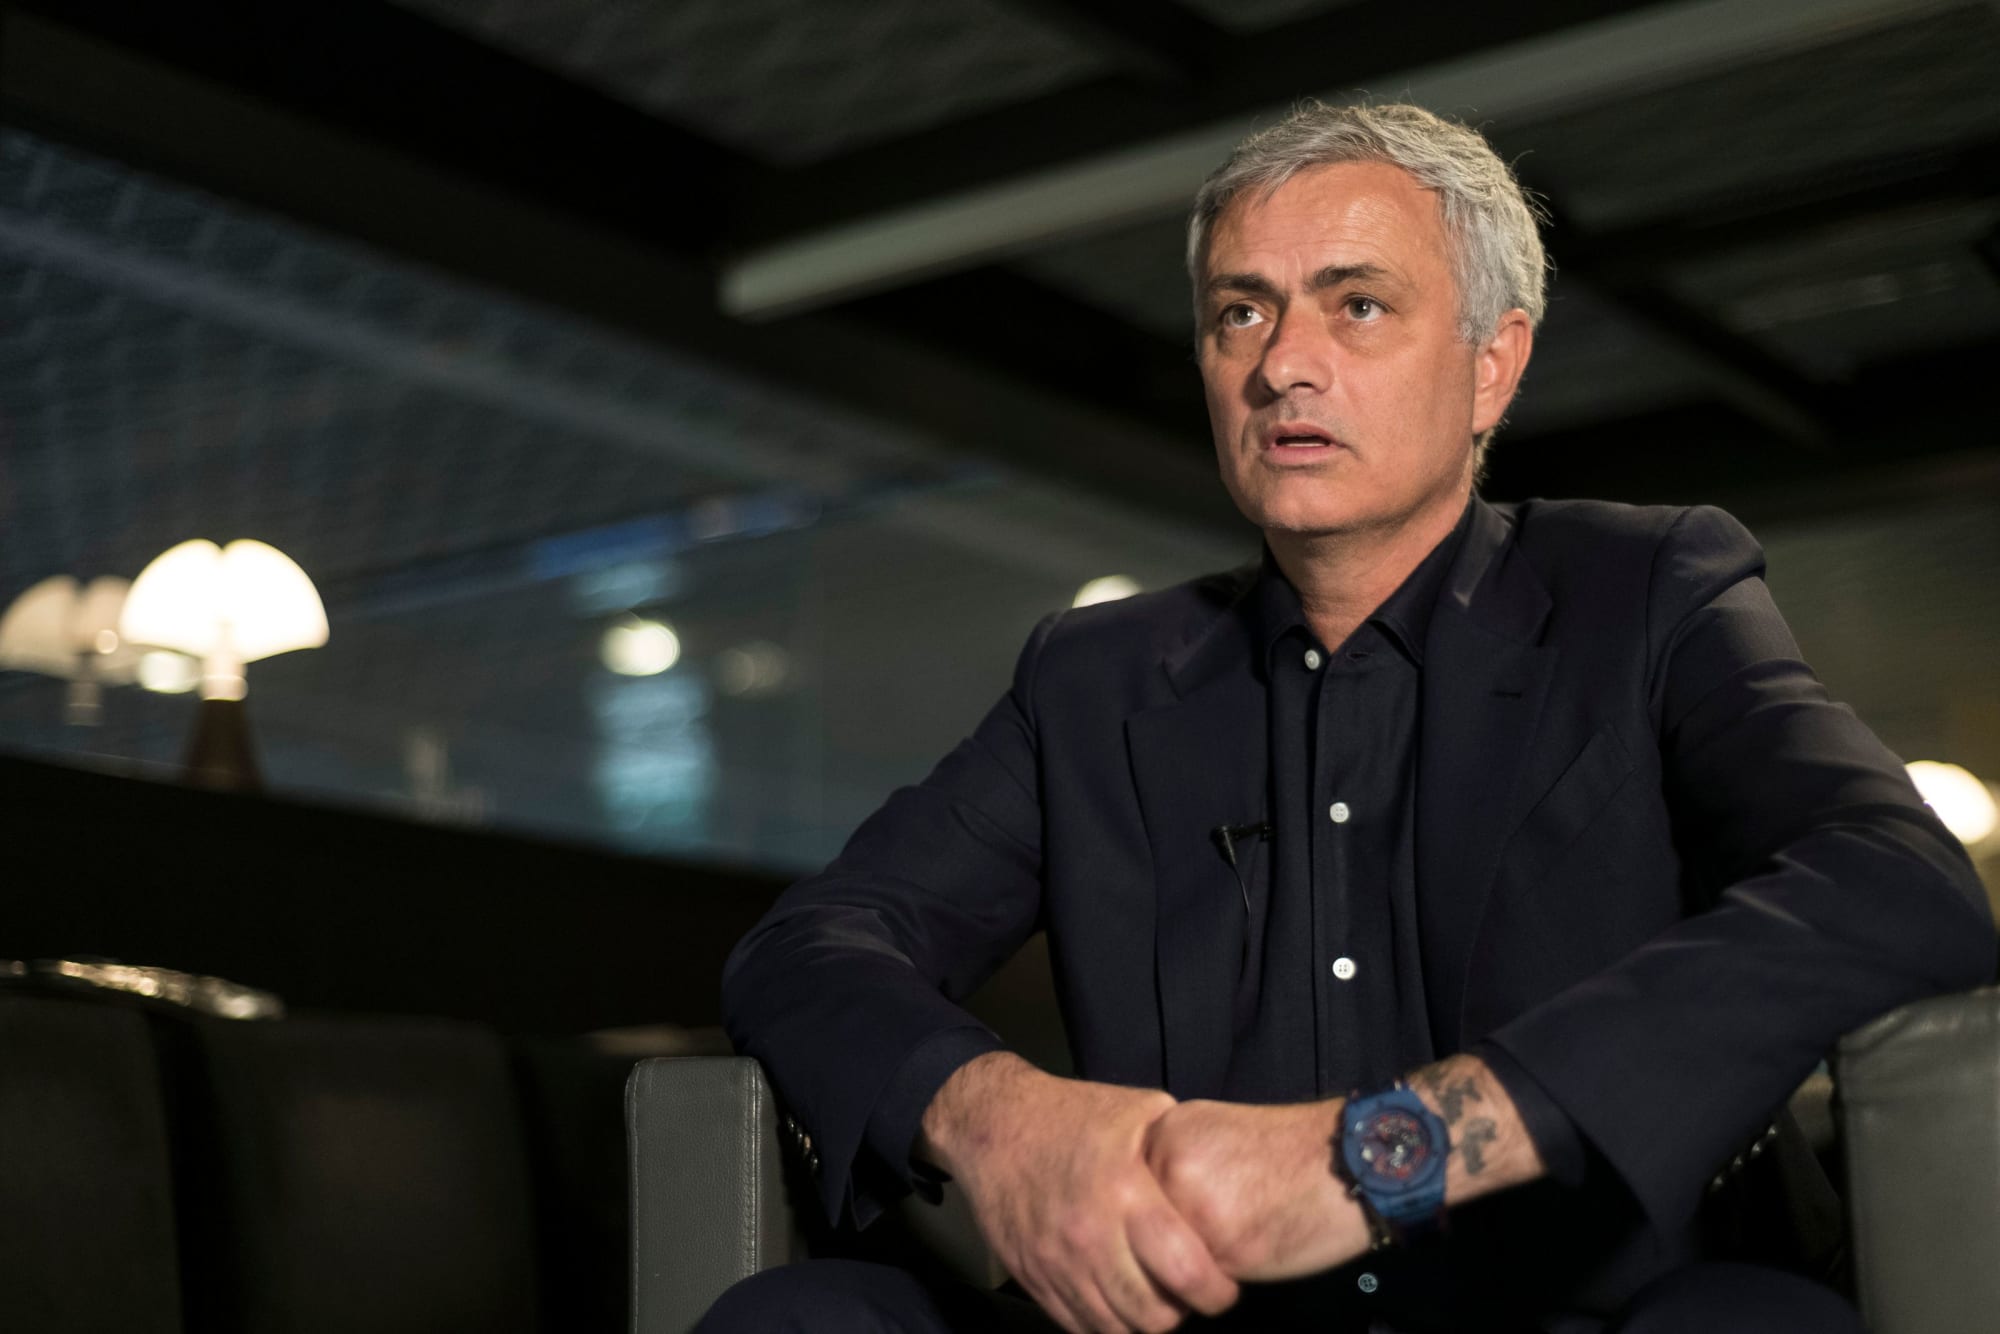 Come next season, will José Mourinho be Barcelona manager?